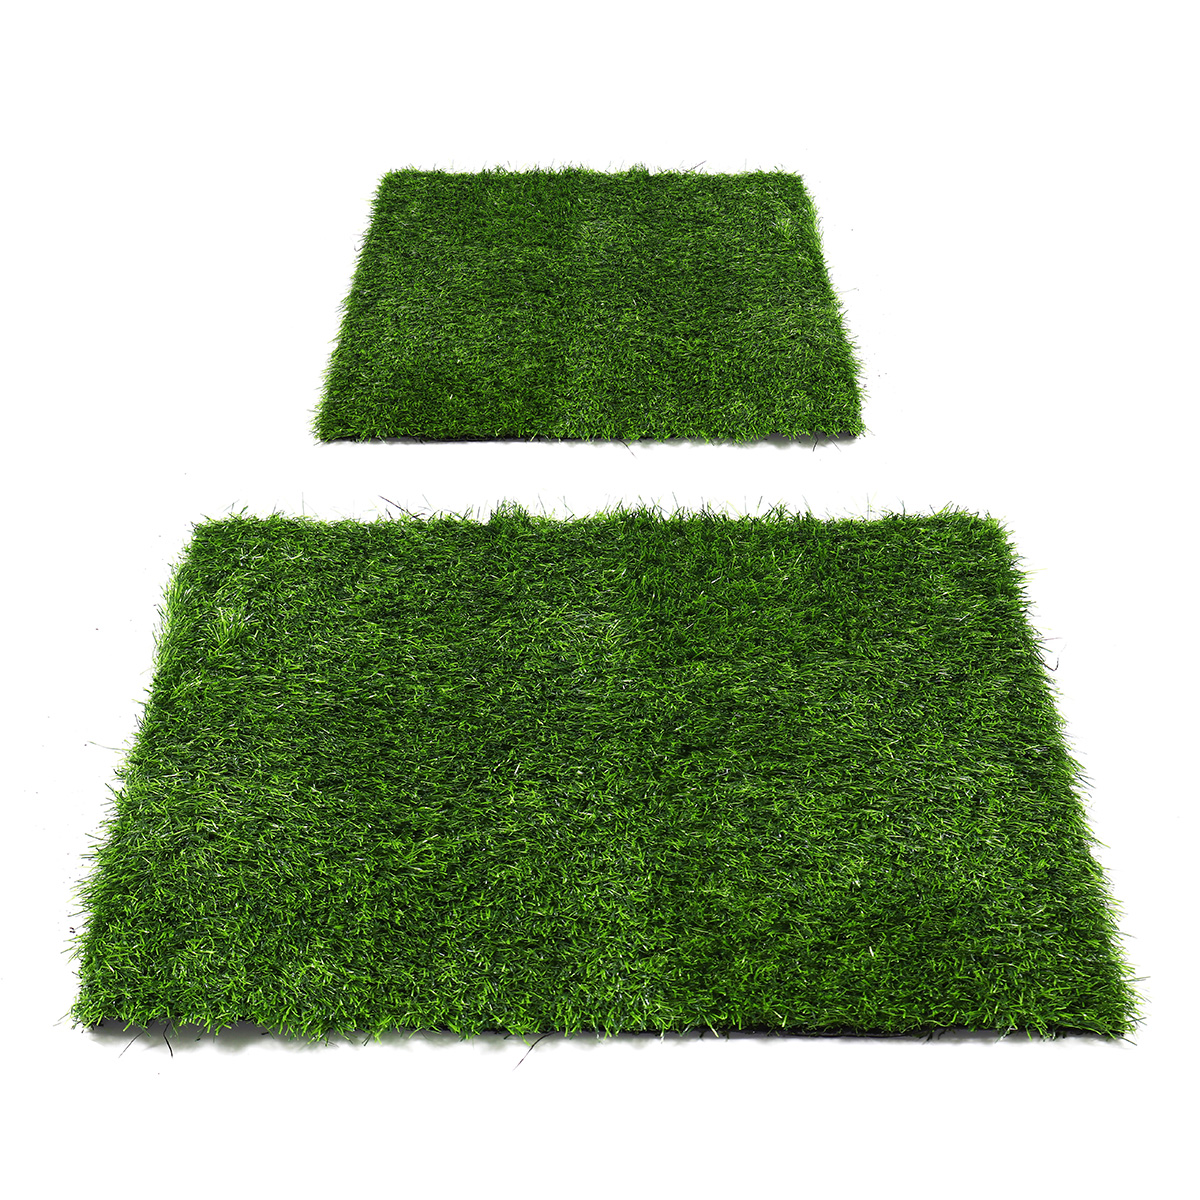 Artificial-Green-Grass-Carpet-Mat-Artificial-Lawns-Turf-Carpets-For-Home-Garden-Micro-Landscape-1726933-2